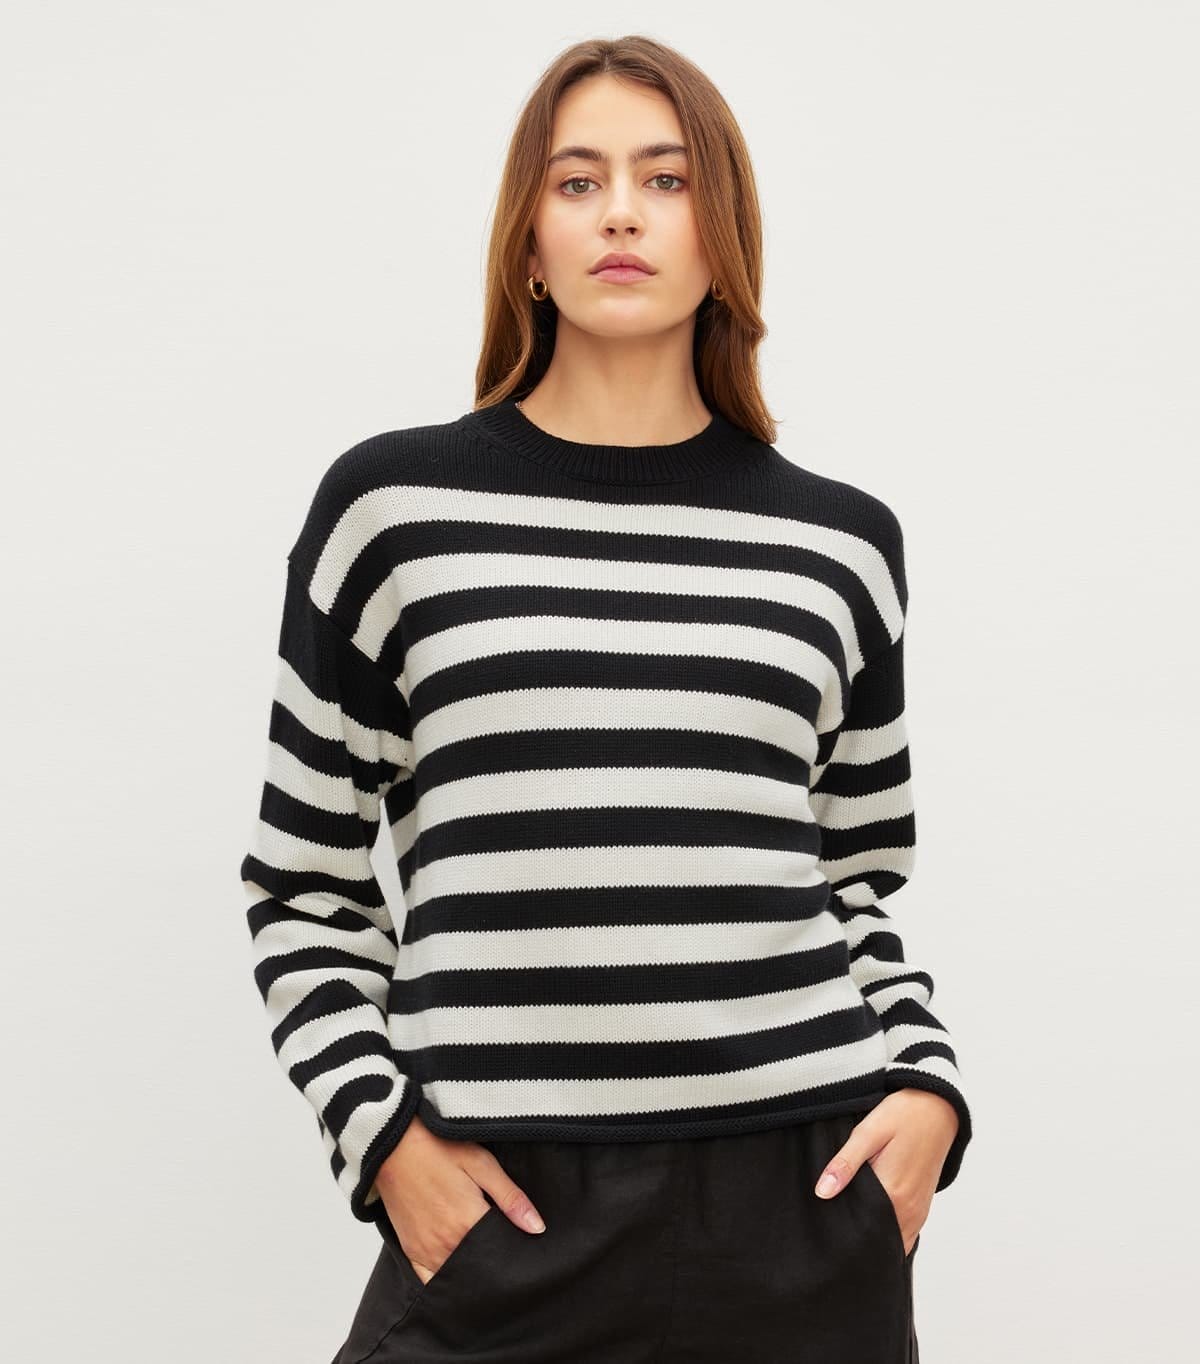 Model wearing the Lex Sweater